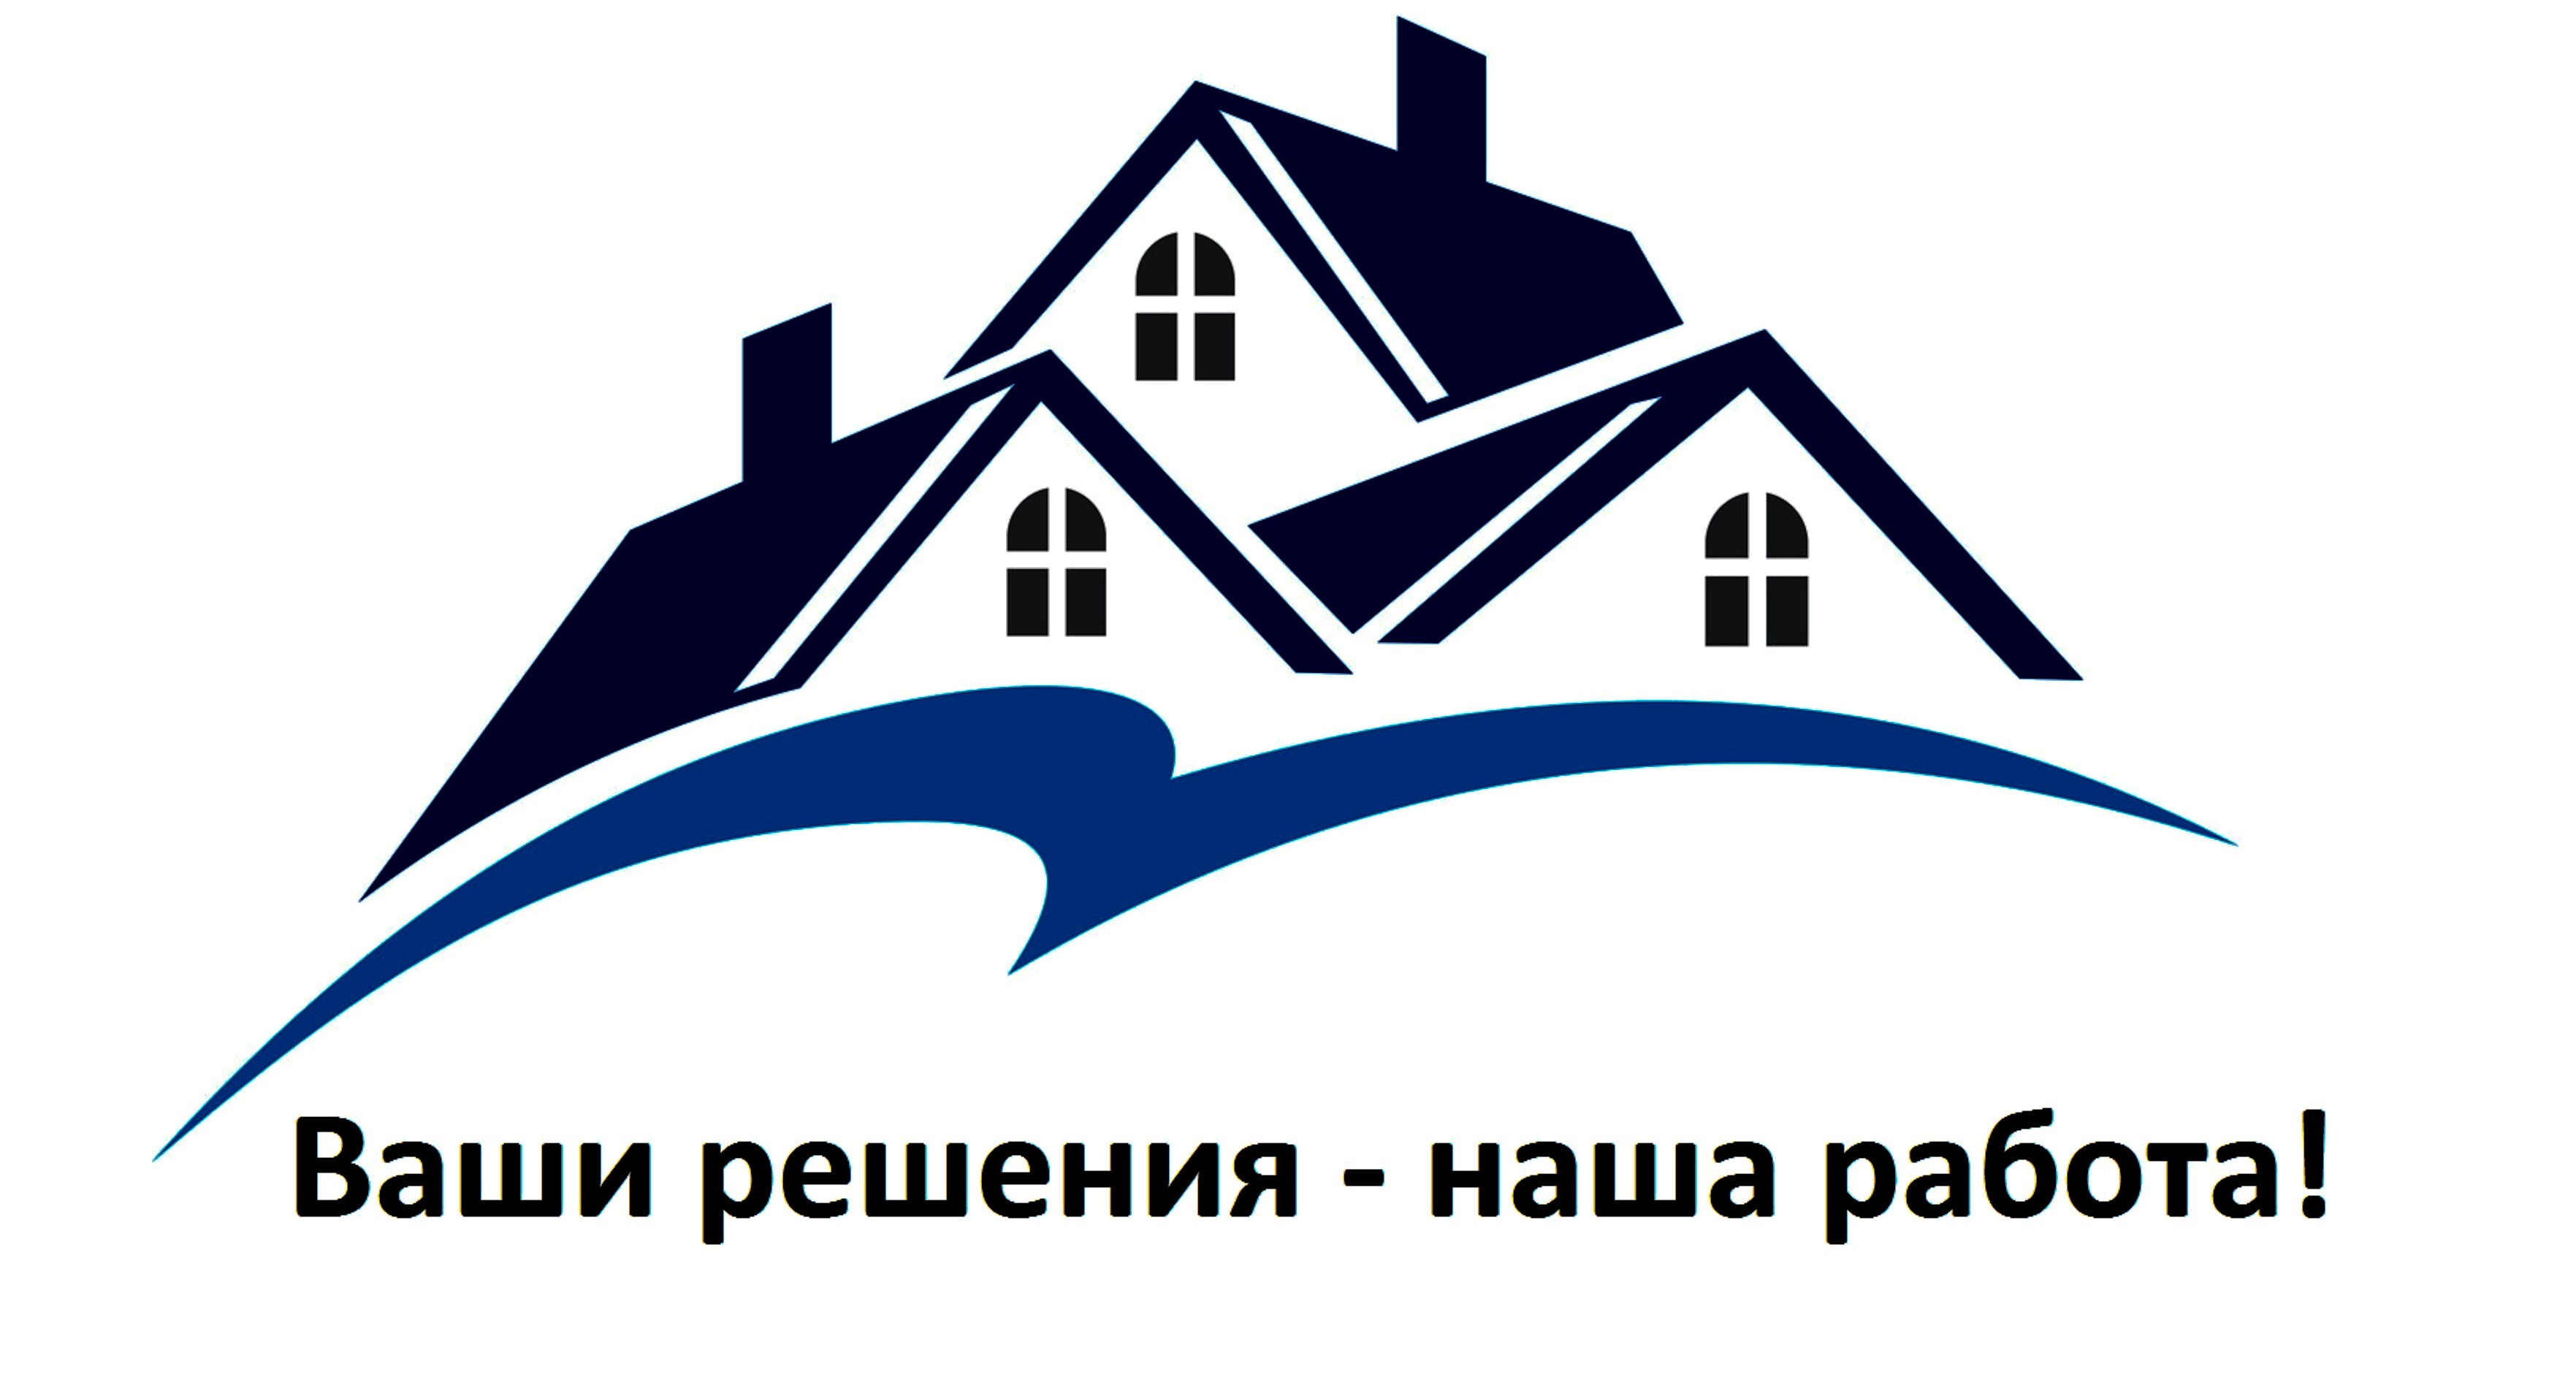 Логотип строительной компании домов